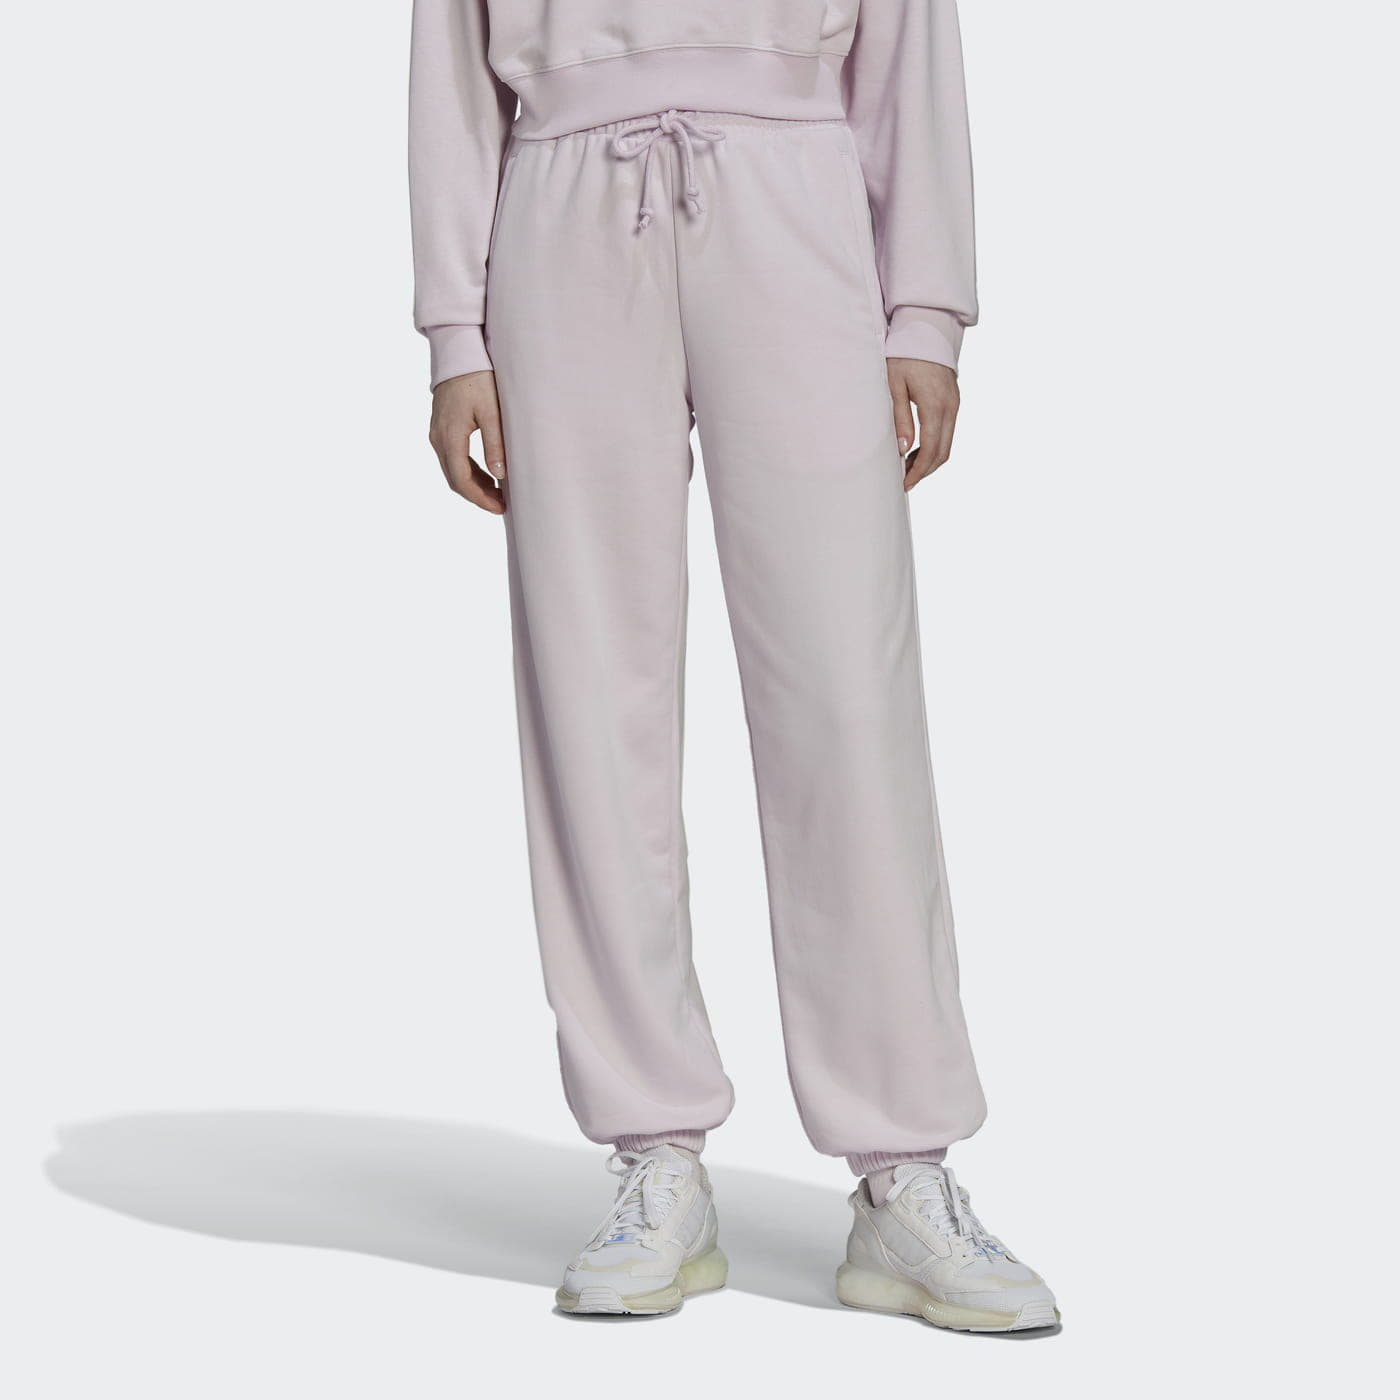 Jogger Pants adidas Originals Sweatpants Almost Pink